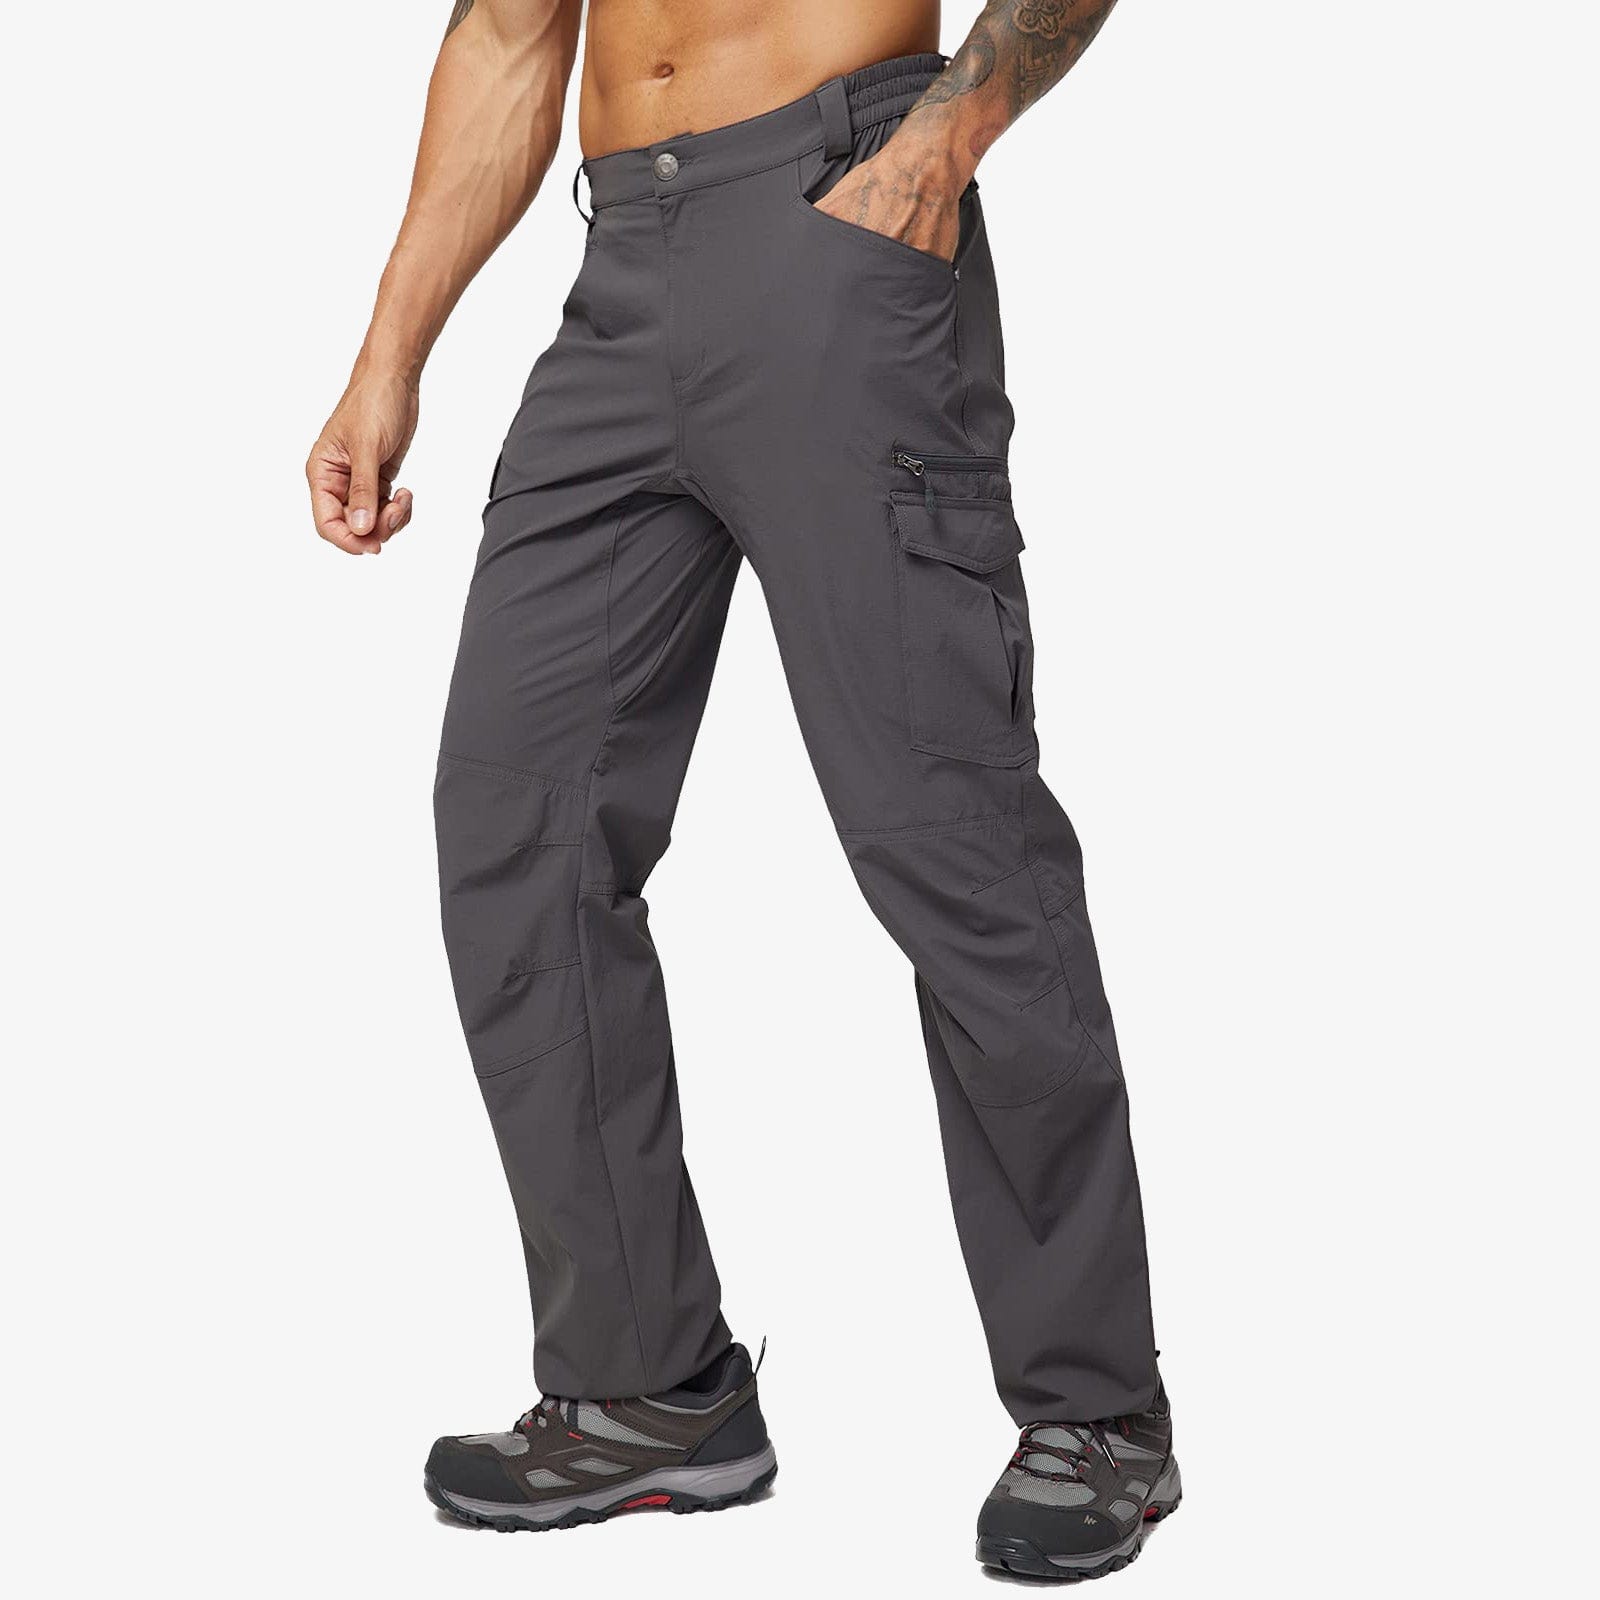 Buy NOUKOW Men's Outdoor Hiking Pants Quick Dry Lightweight Waterproof Work  Pants for Men Stretch 6 Zip Pockets and Belt, Dark Grey, 32W x 30L at  Amazon.in